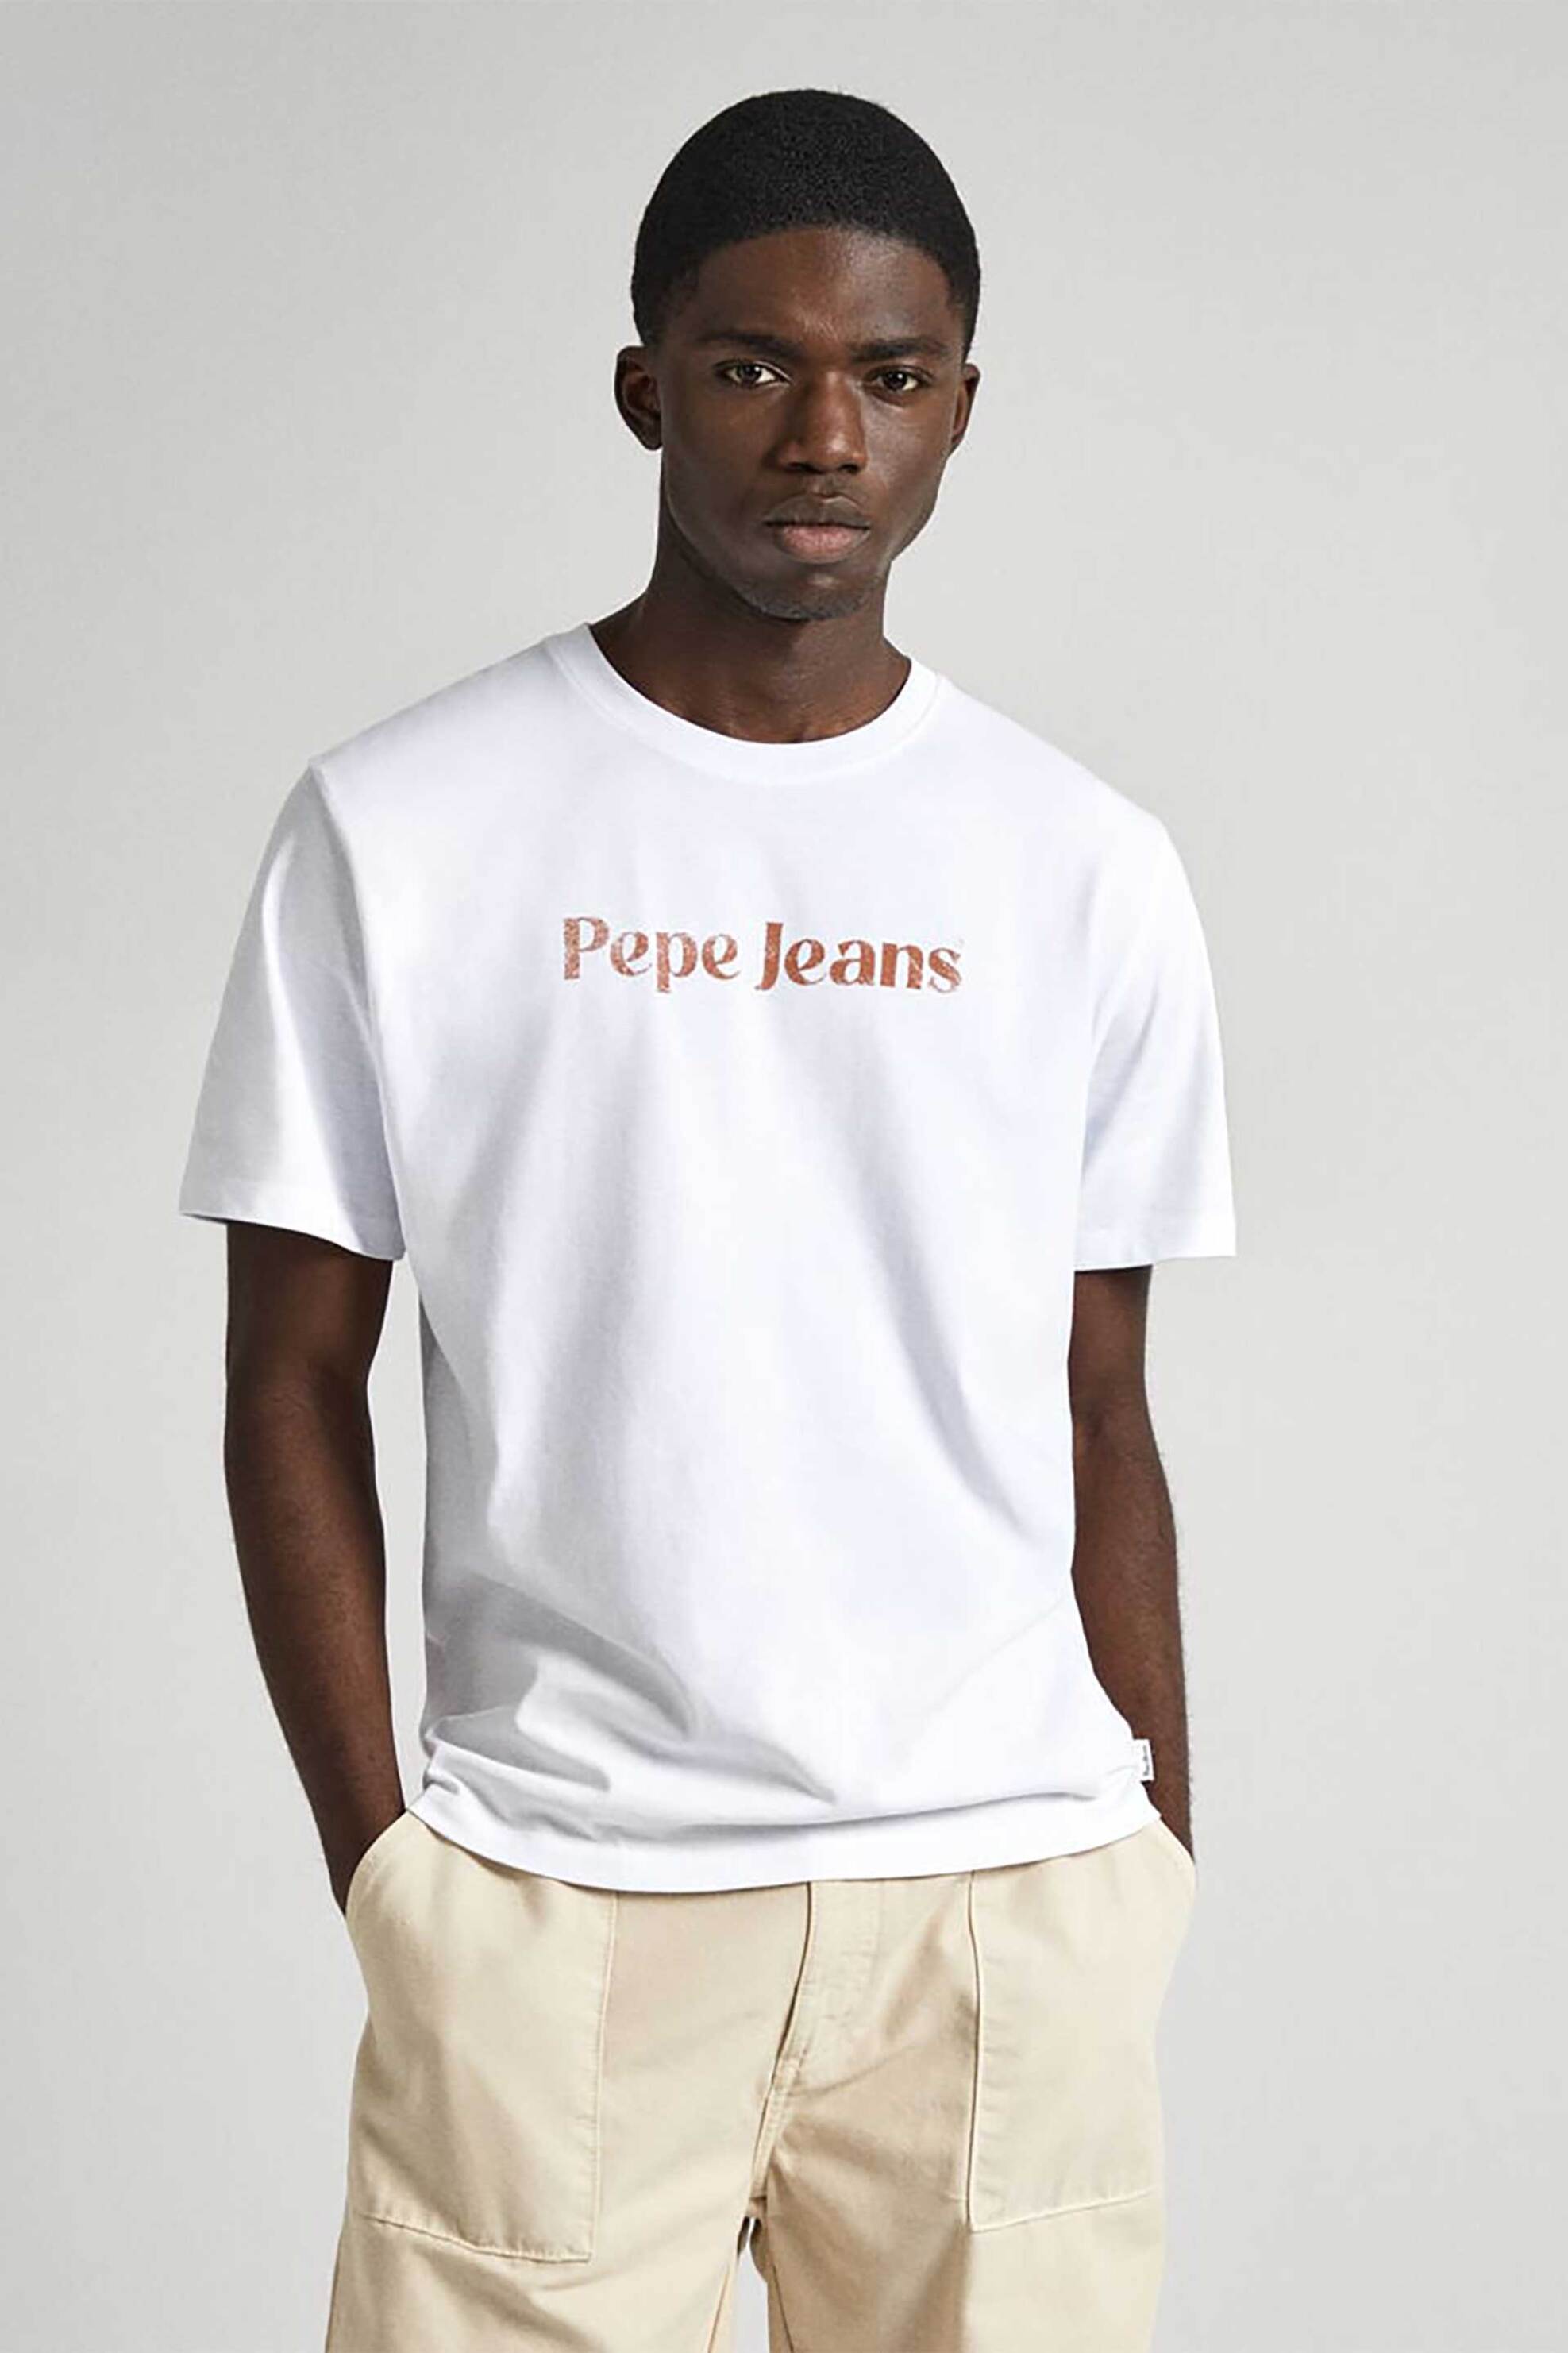 Ανδρική Μόδα > Ανδρικά Ρούχα > Ανδρικές Μπλούζες > Ανδρικά T-Shirts Pepe Jeans ανδρικό T-shirt μονόχρωμο βαμβακερό με contrast logo print μπροστά - PM509374 Λευκό